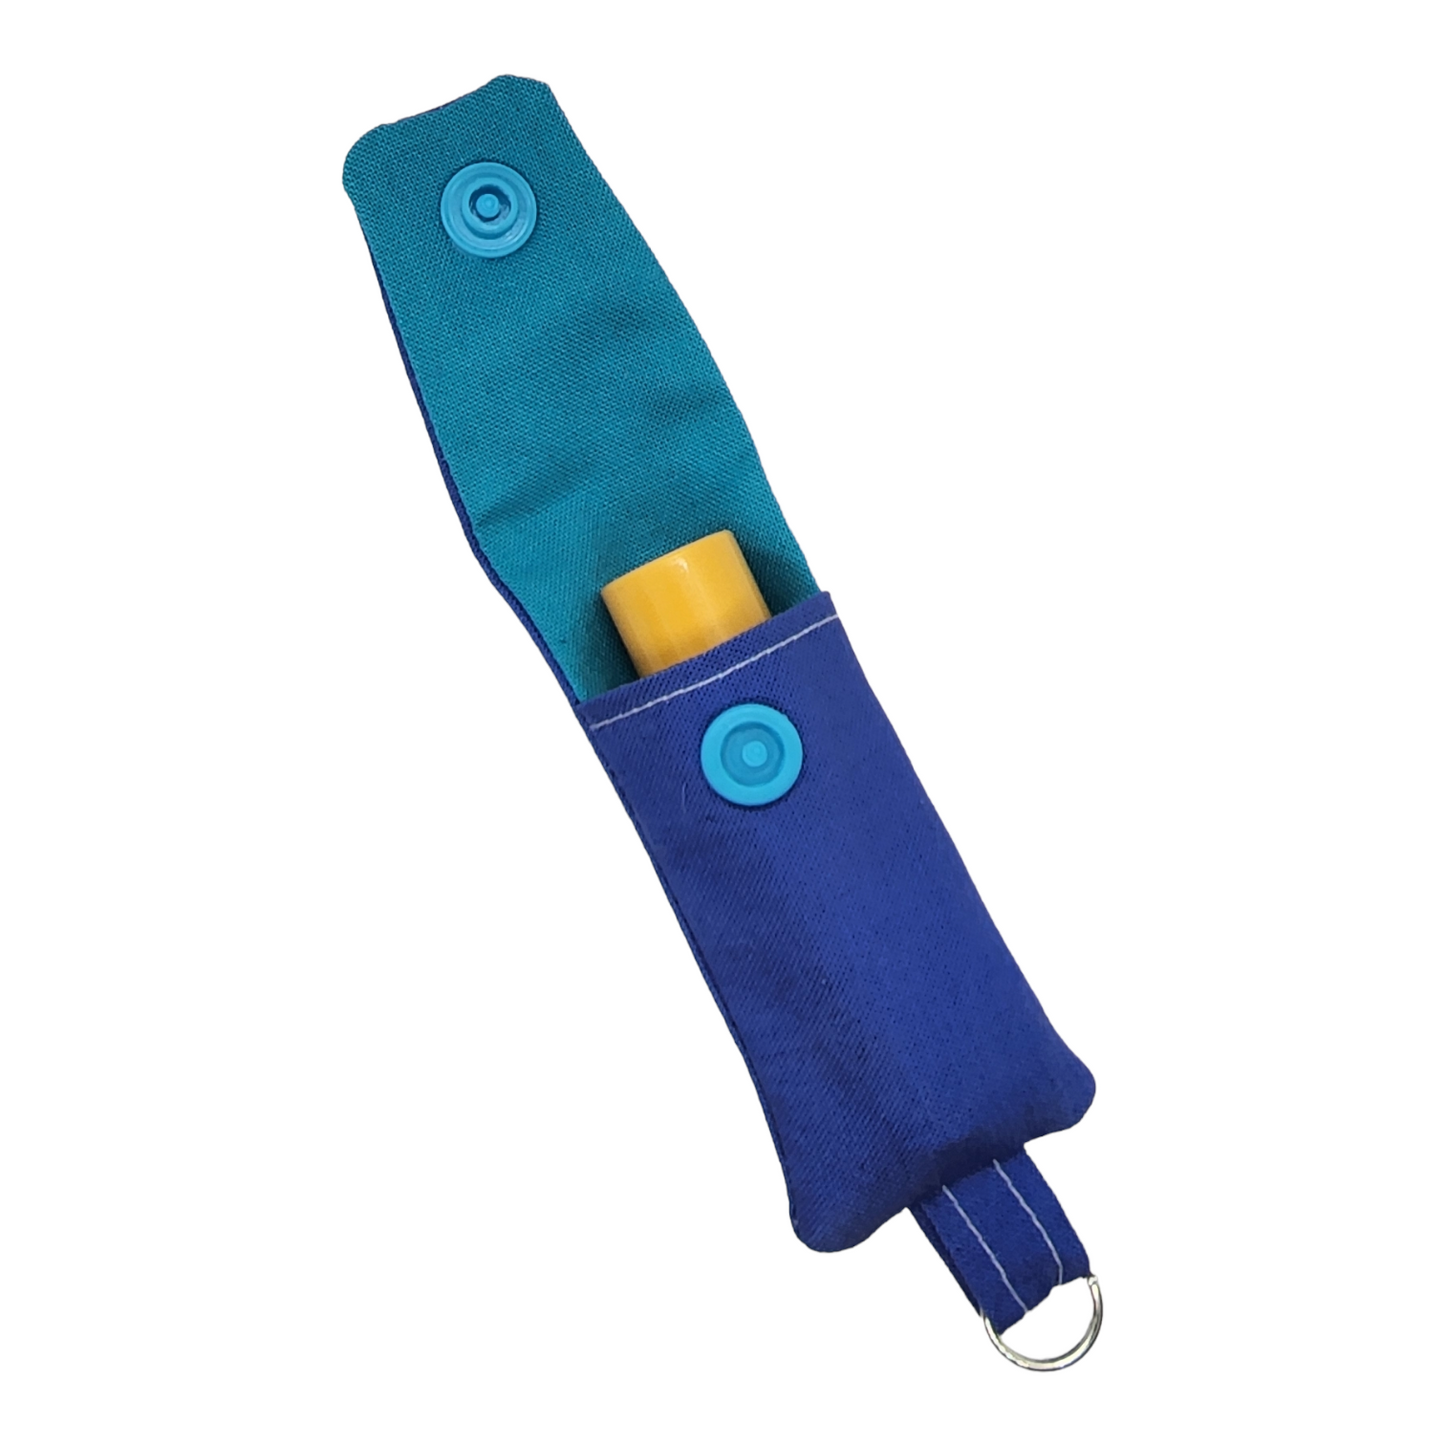 Chapstick Holder Keychains - Blue/Teal